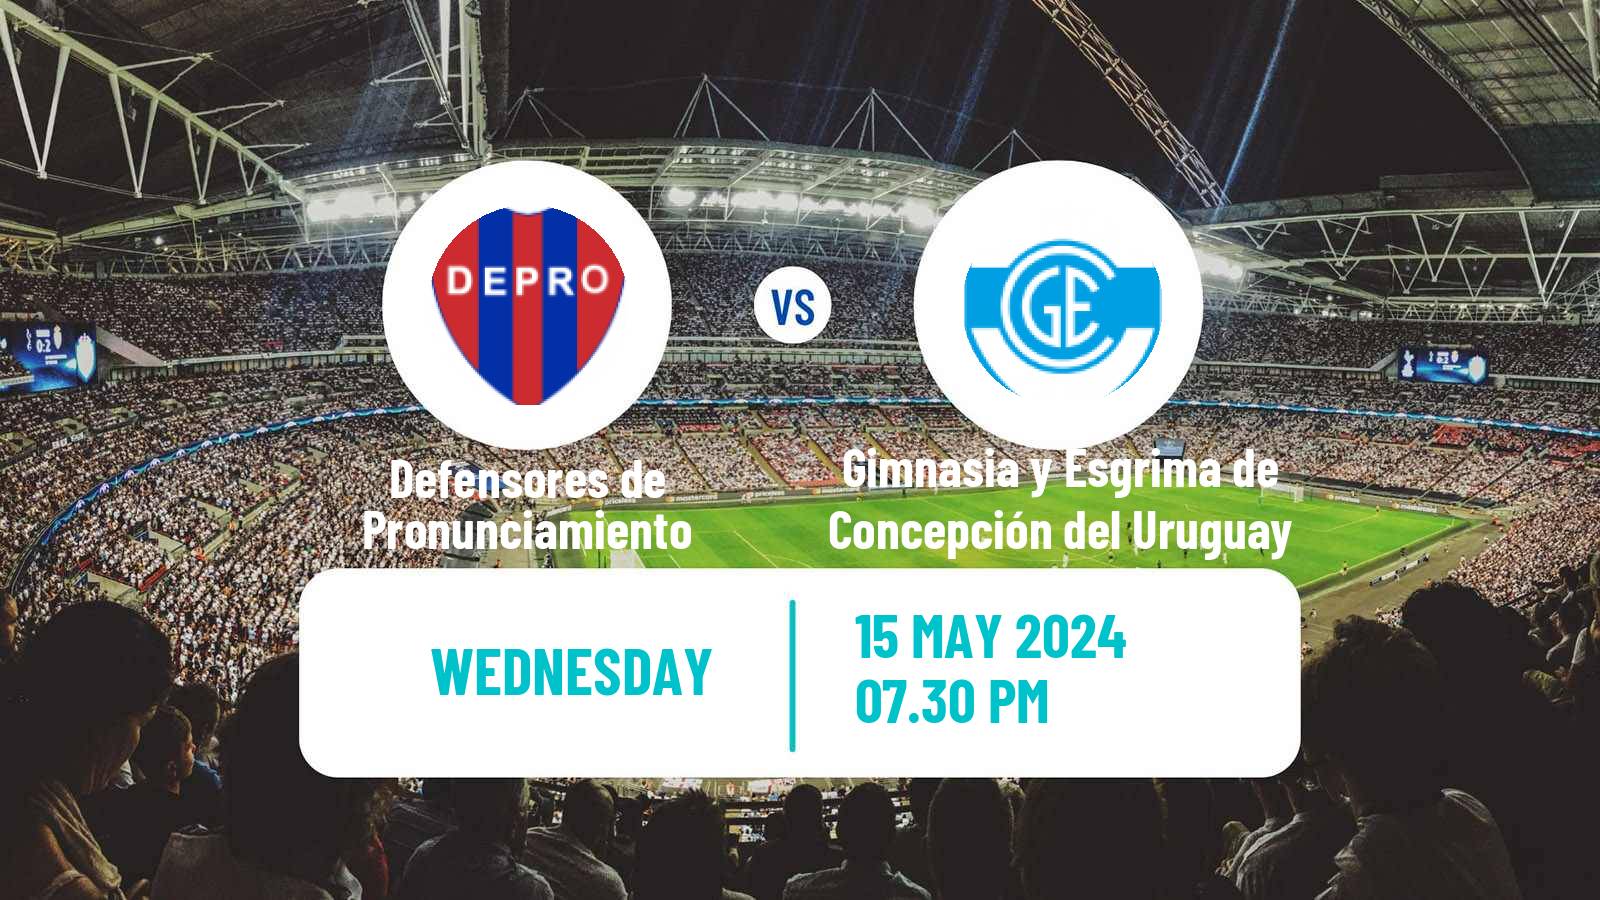 Soccer Argentinian Torneo Federal Defensores de Pronunciamiento - Gimnasia y Esgrima de Concepción del Uruguay